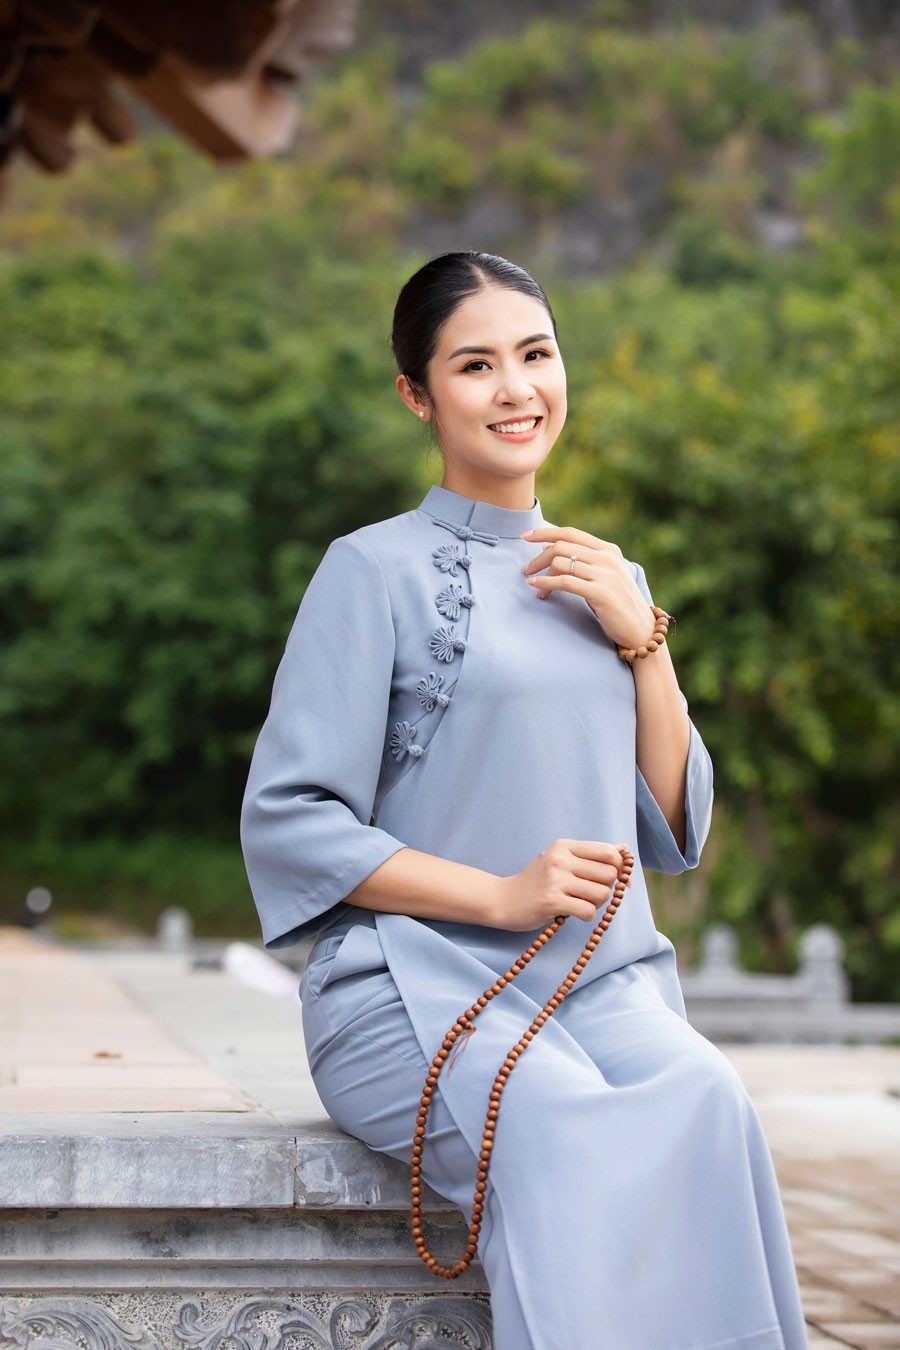 Hoa hậu Ngọc Hân dịu dàng, duyên dáng khi làm mẫu bộ sưu tập pháp phục vãn cảnh chùa